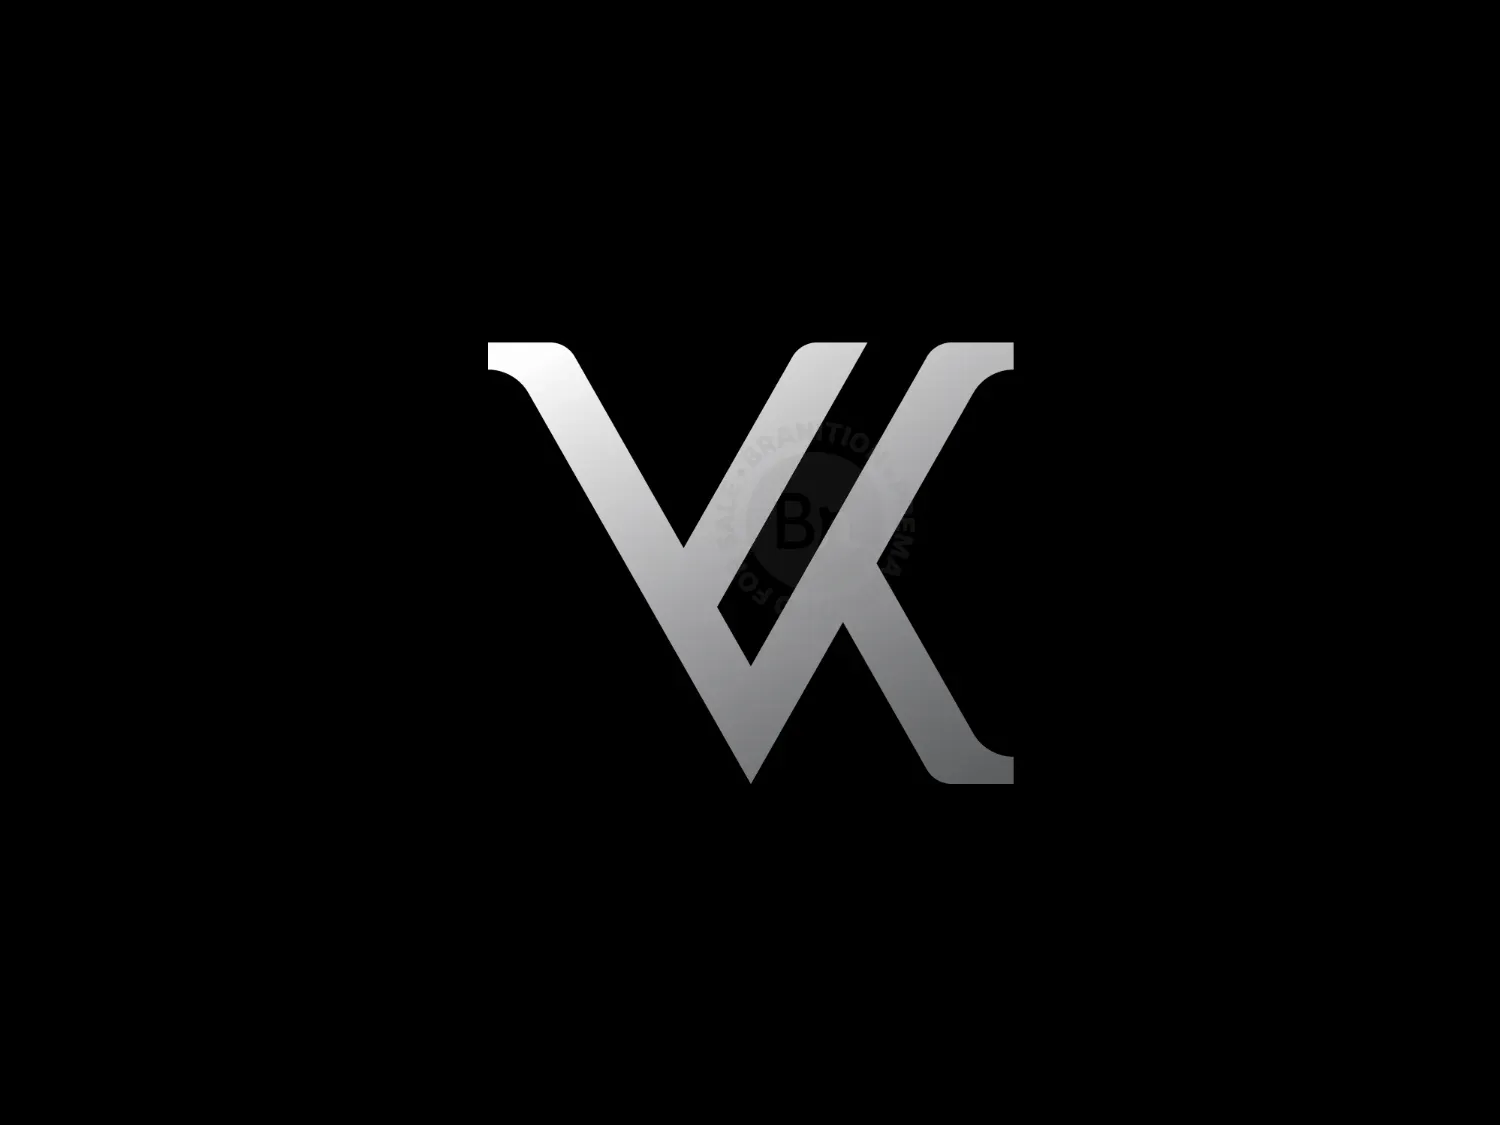 Kv Logo Initial Letter Design Template Stock Vector (Royalty Free)  766272346 | Shutterstock